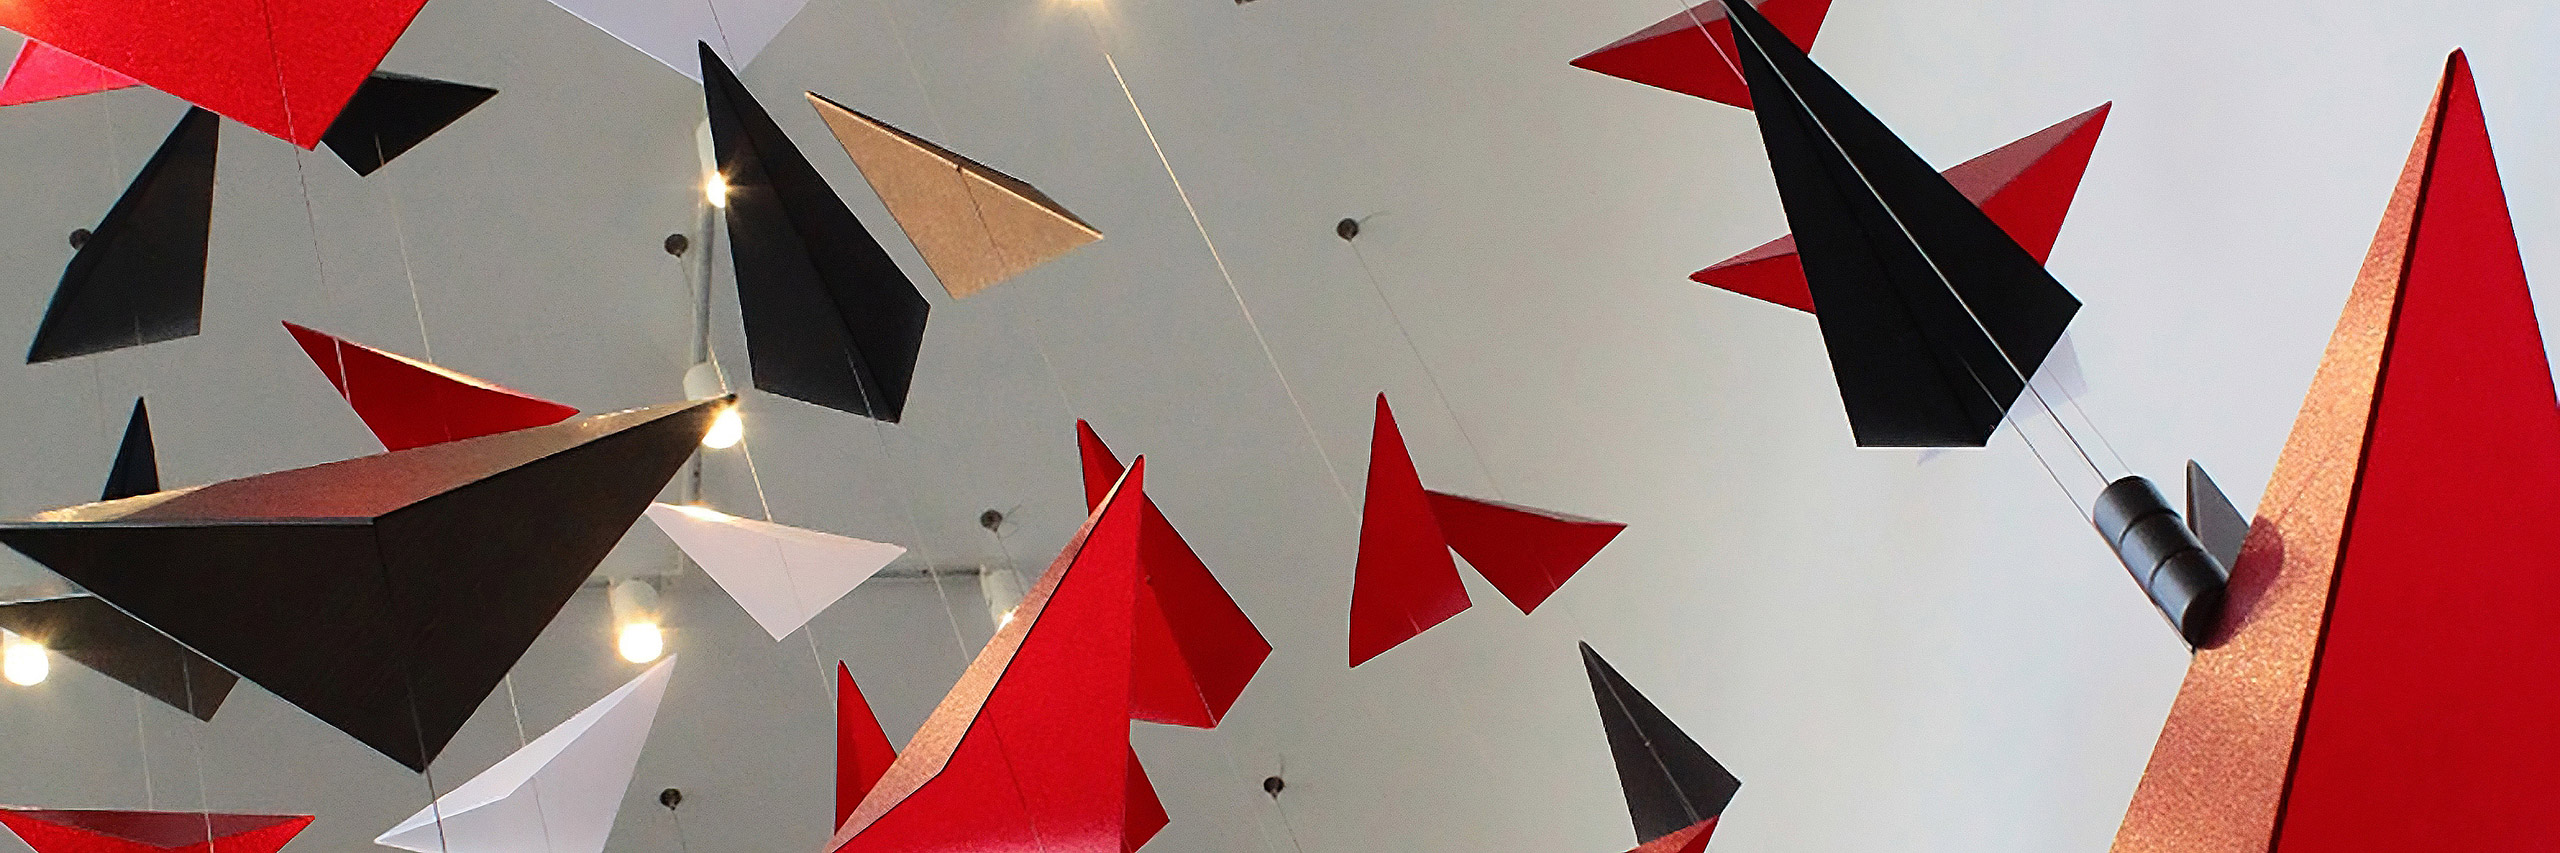 Redbirds in Flight art installation